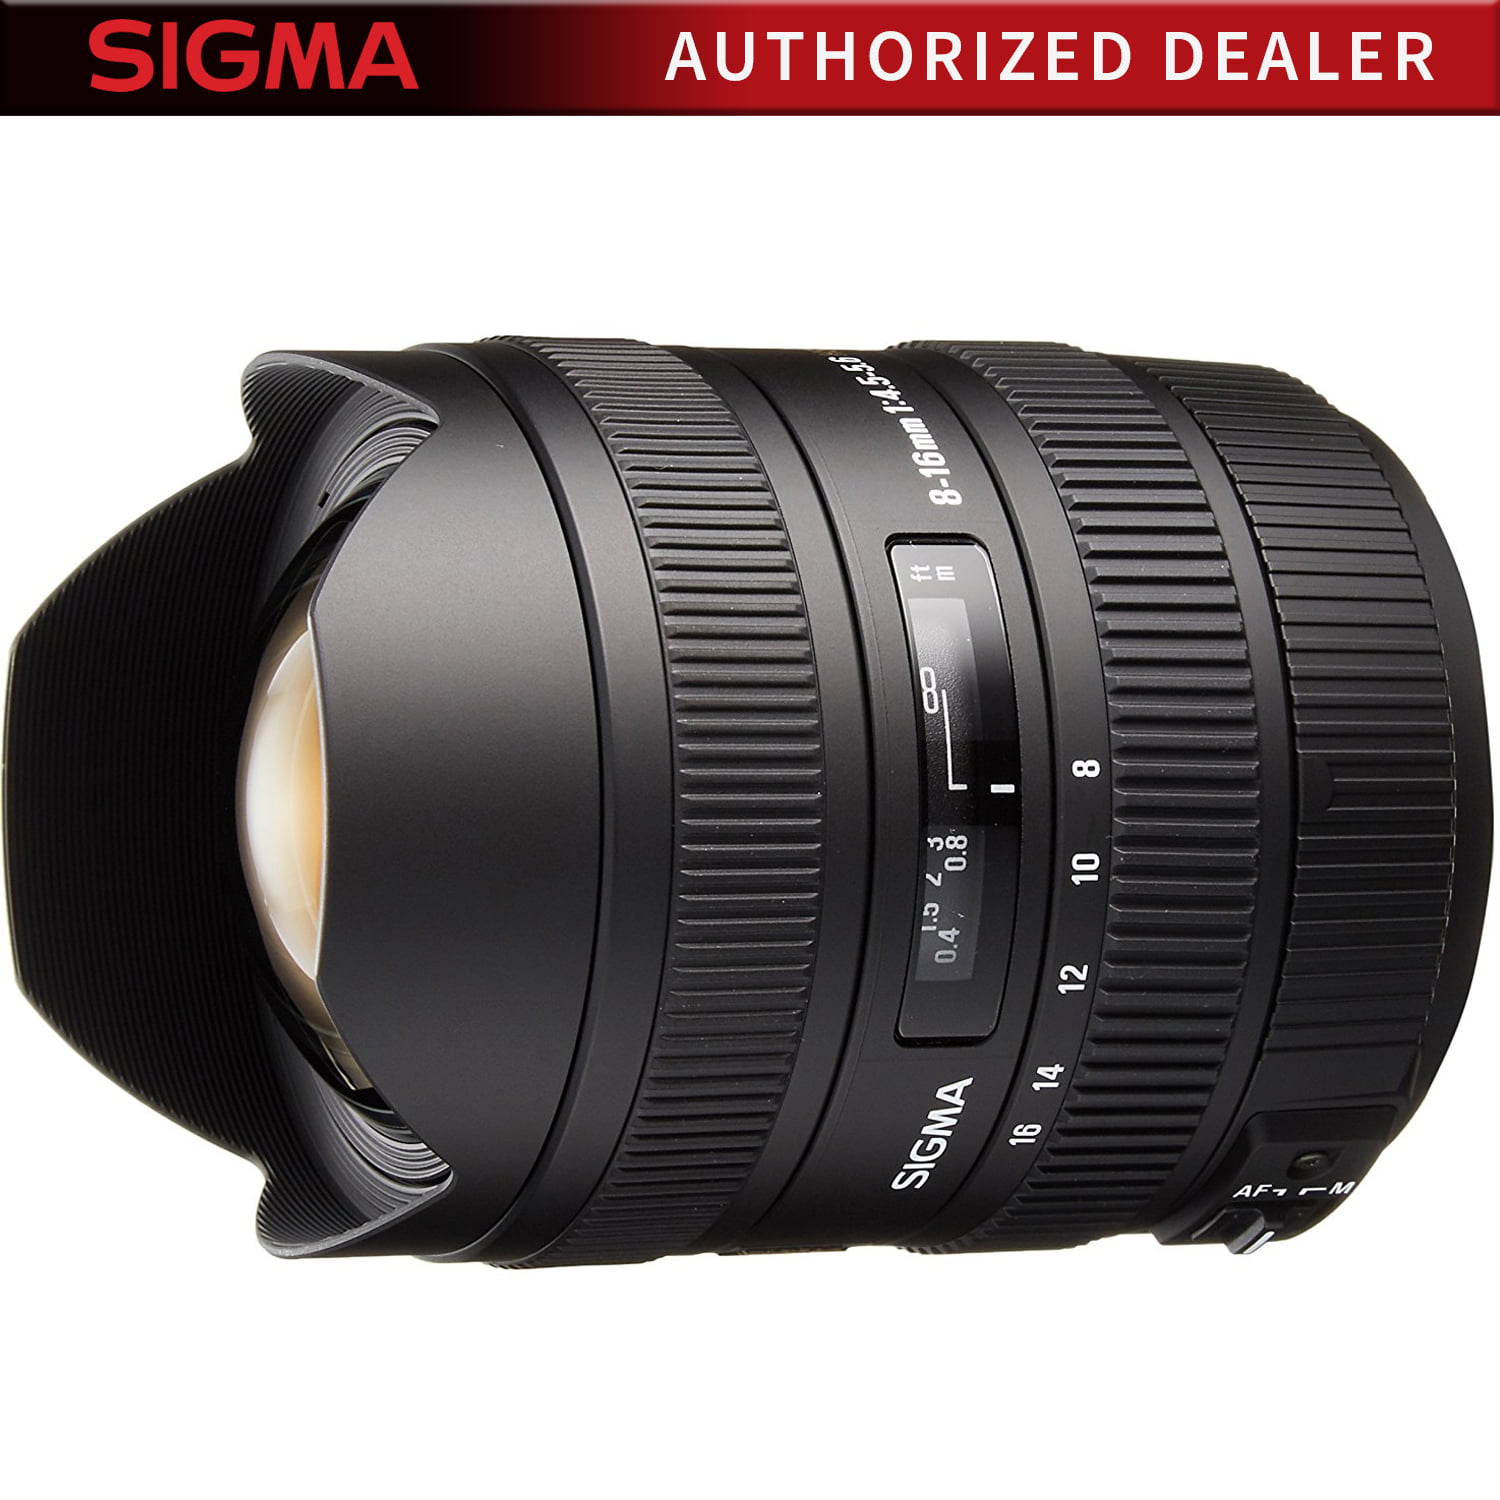 sigma 8-16mm f/4.5-5.6 dc hsm fld af ultra wide zoom lens for aps